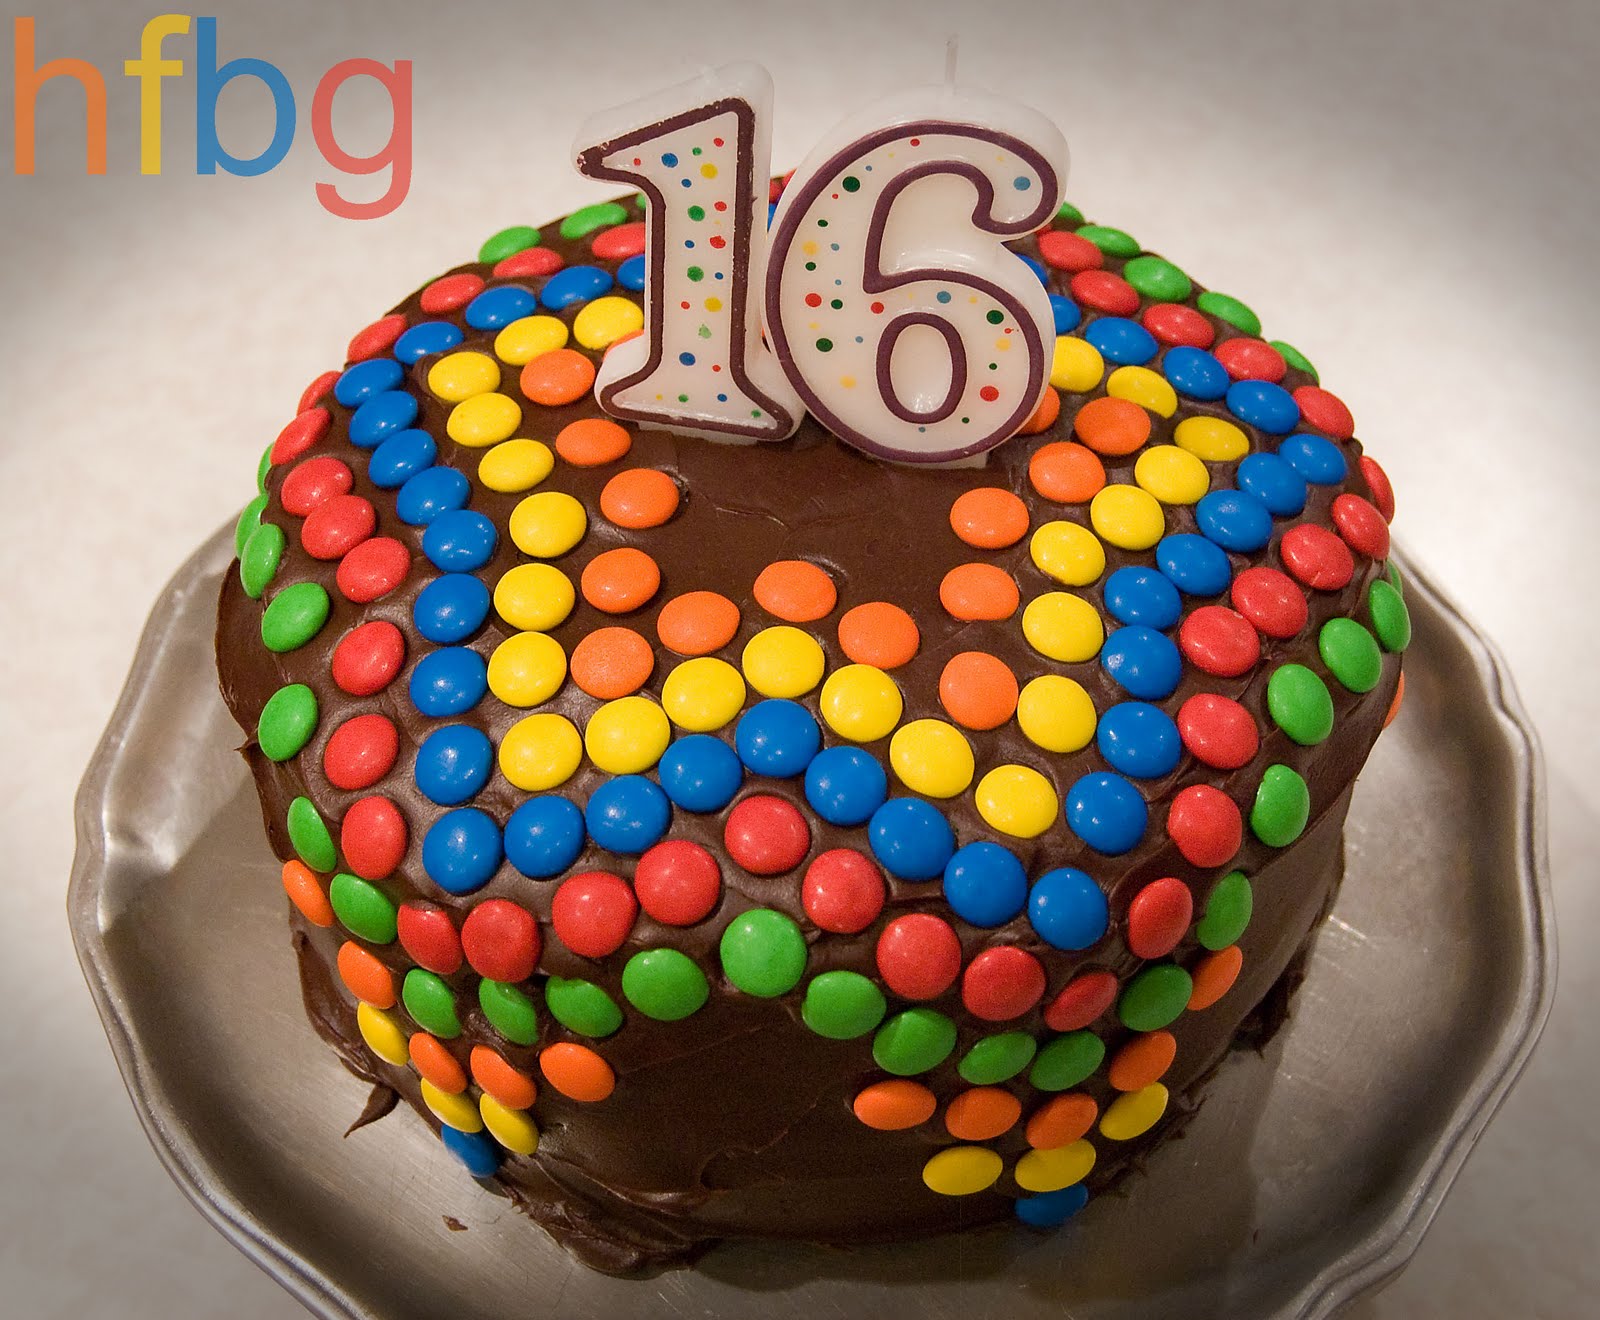 Homemade Birthday Cake - Part 2